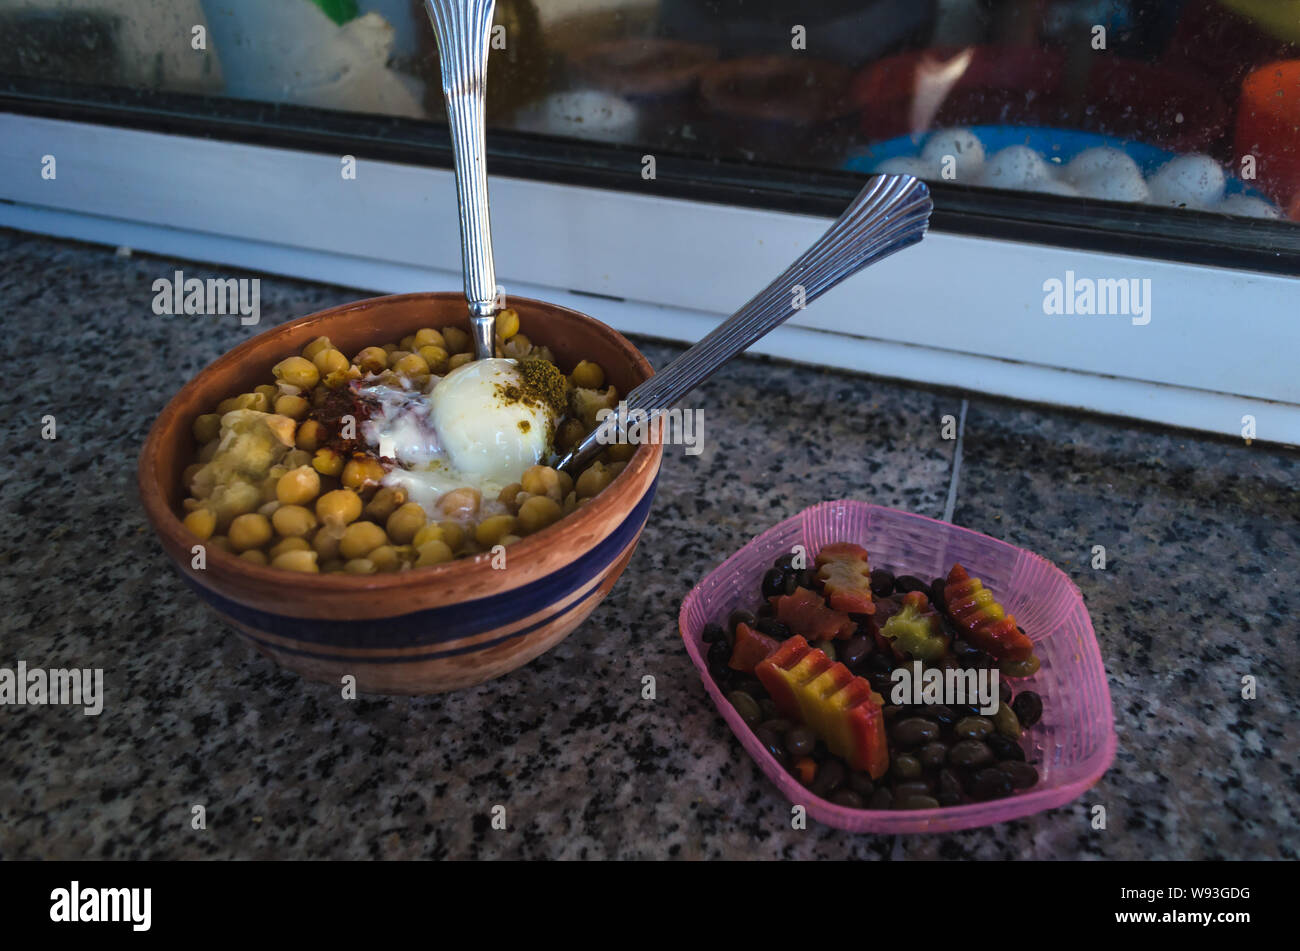 Lablebi Lablabi oder eine traditionelle tunesische Gerichte auf der Basis von Kichererbsen. Typische Straße Essen in Tunesien. Lablabi und eingelegtes Gemüse Stockfoto